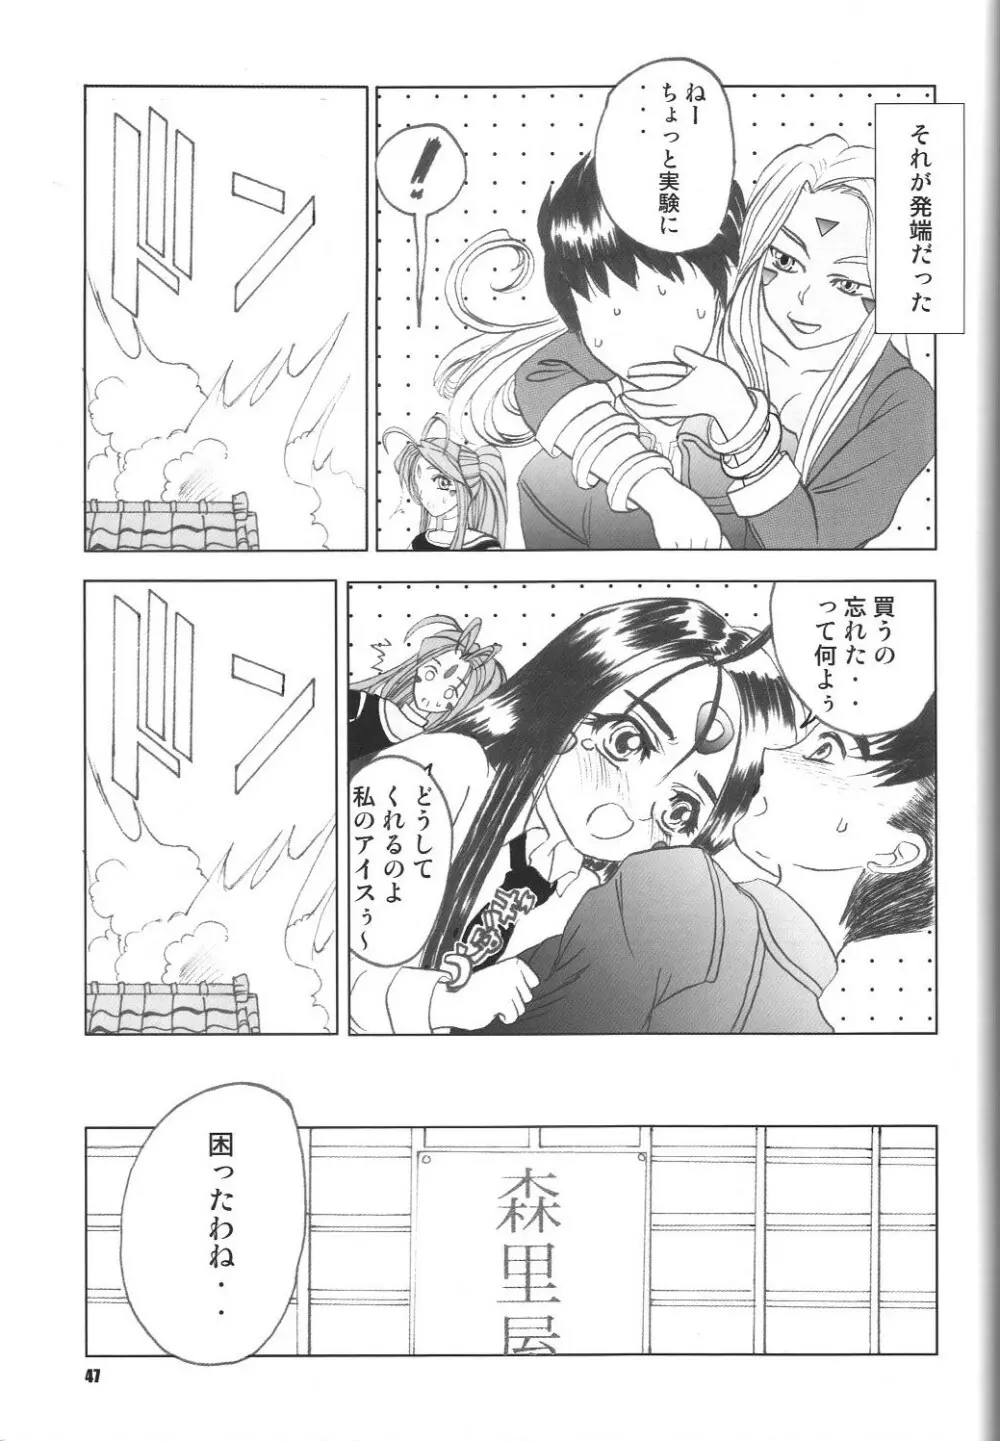 Fujishima Spirits vol.6 46ページ